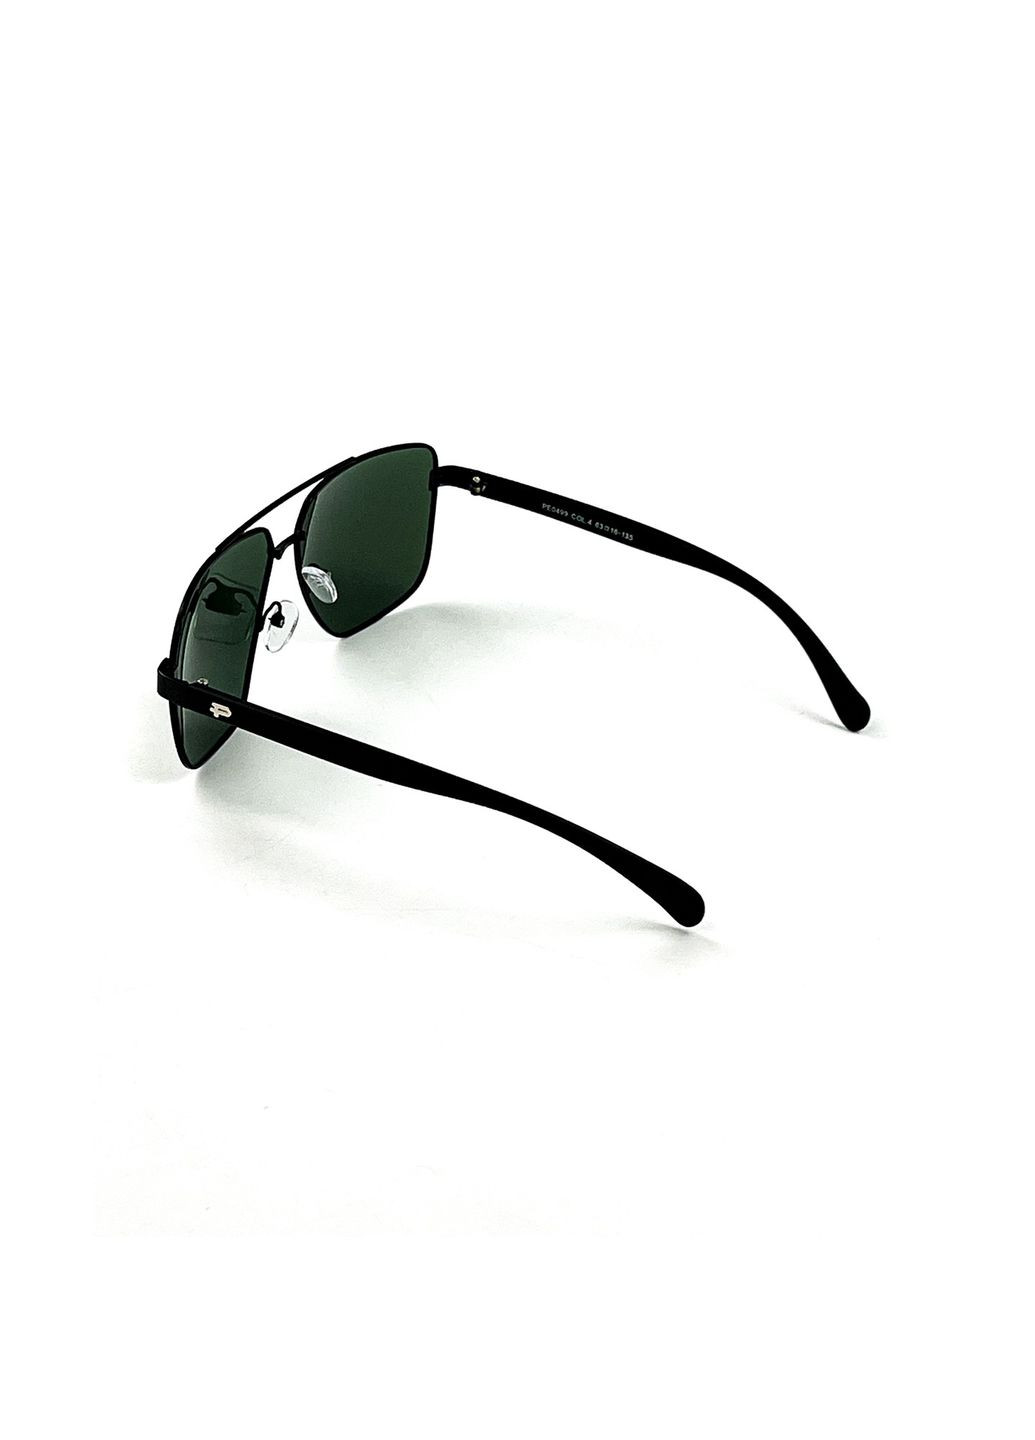 Солнцезащитные очки с поляризацией Фэшн-классика мужские 469-020 LuckyLOOK 469-020м (294336975)